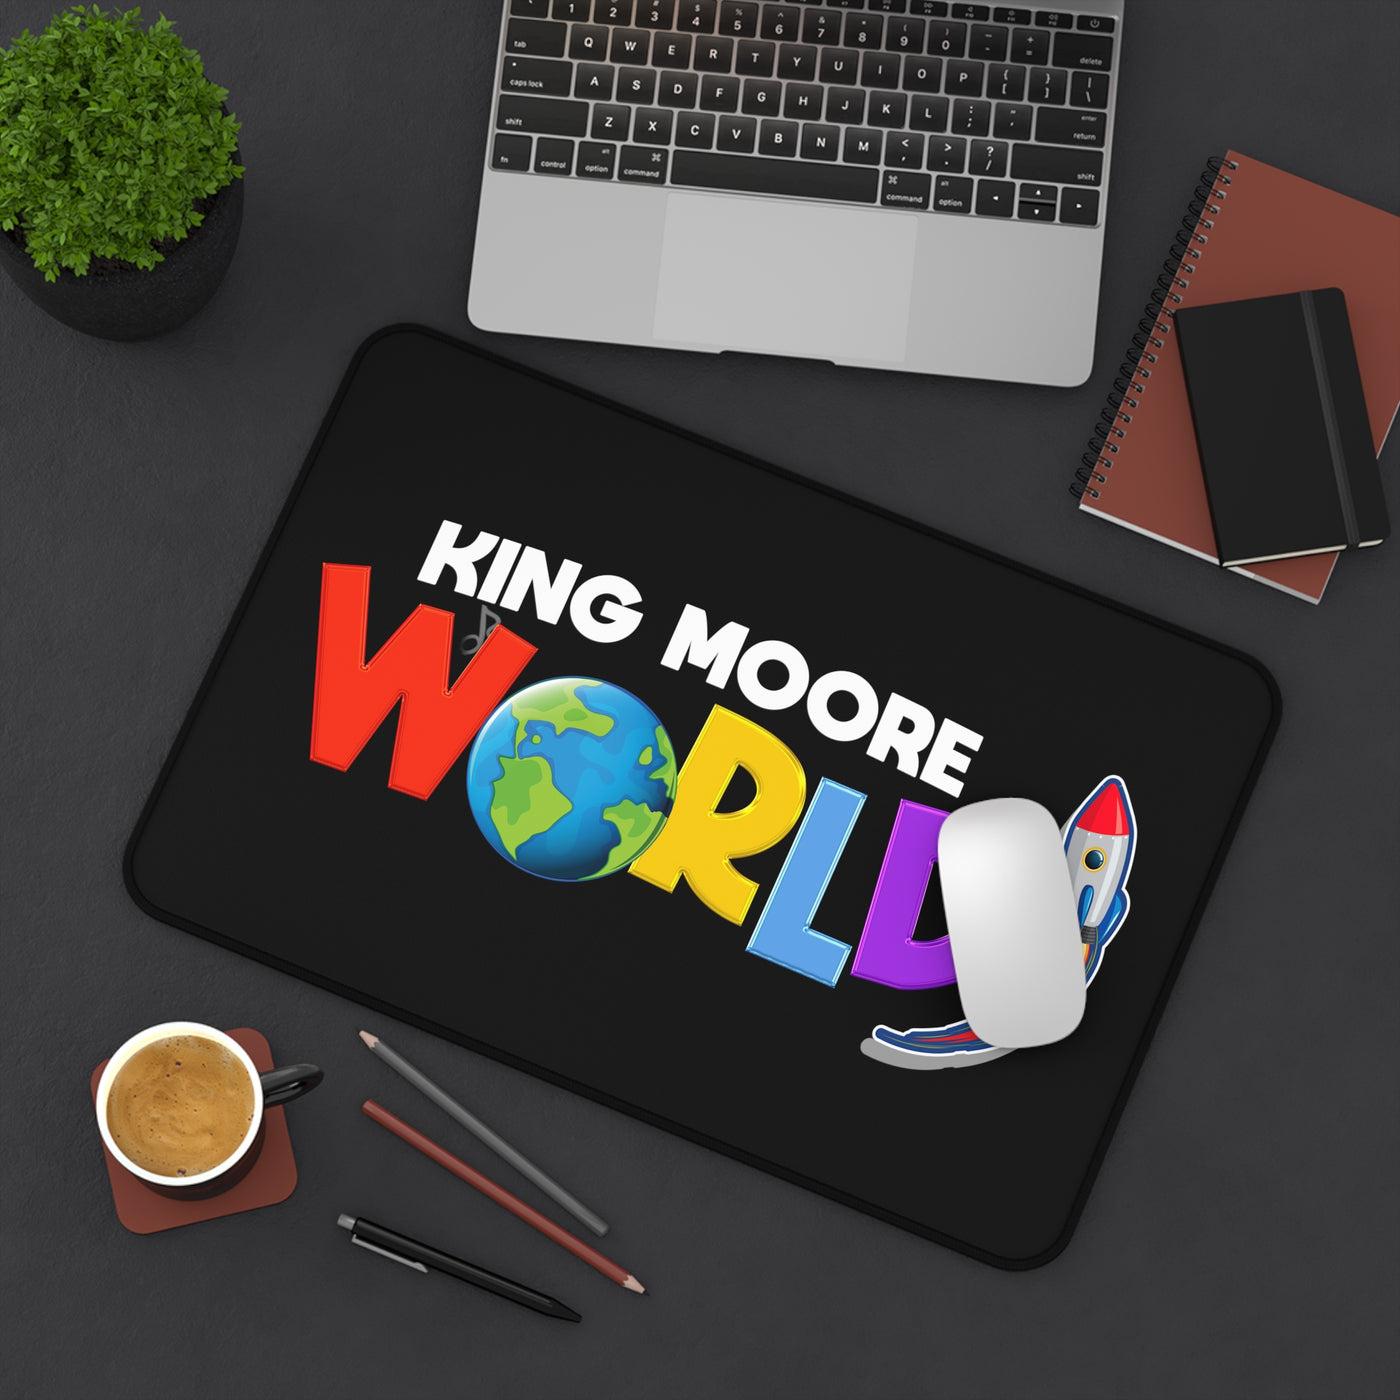 King Moore World Desk Mat (Black)